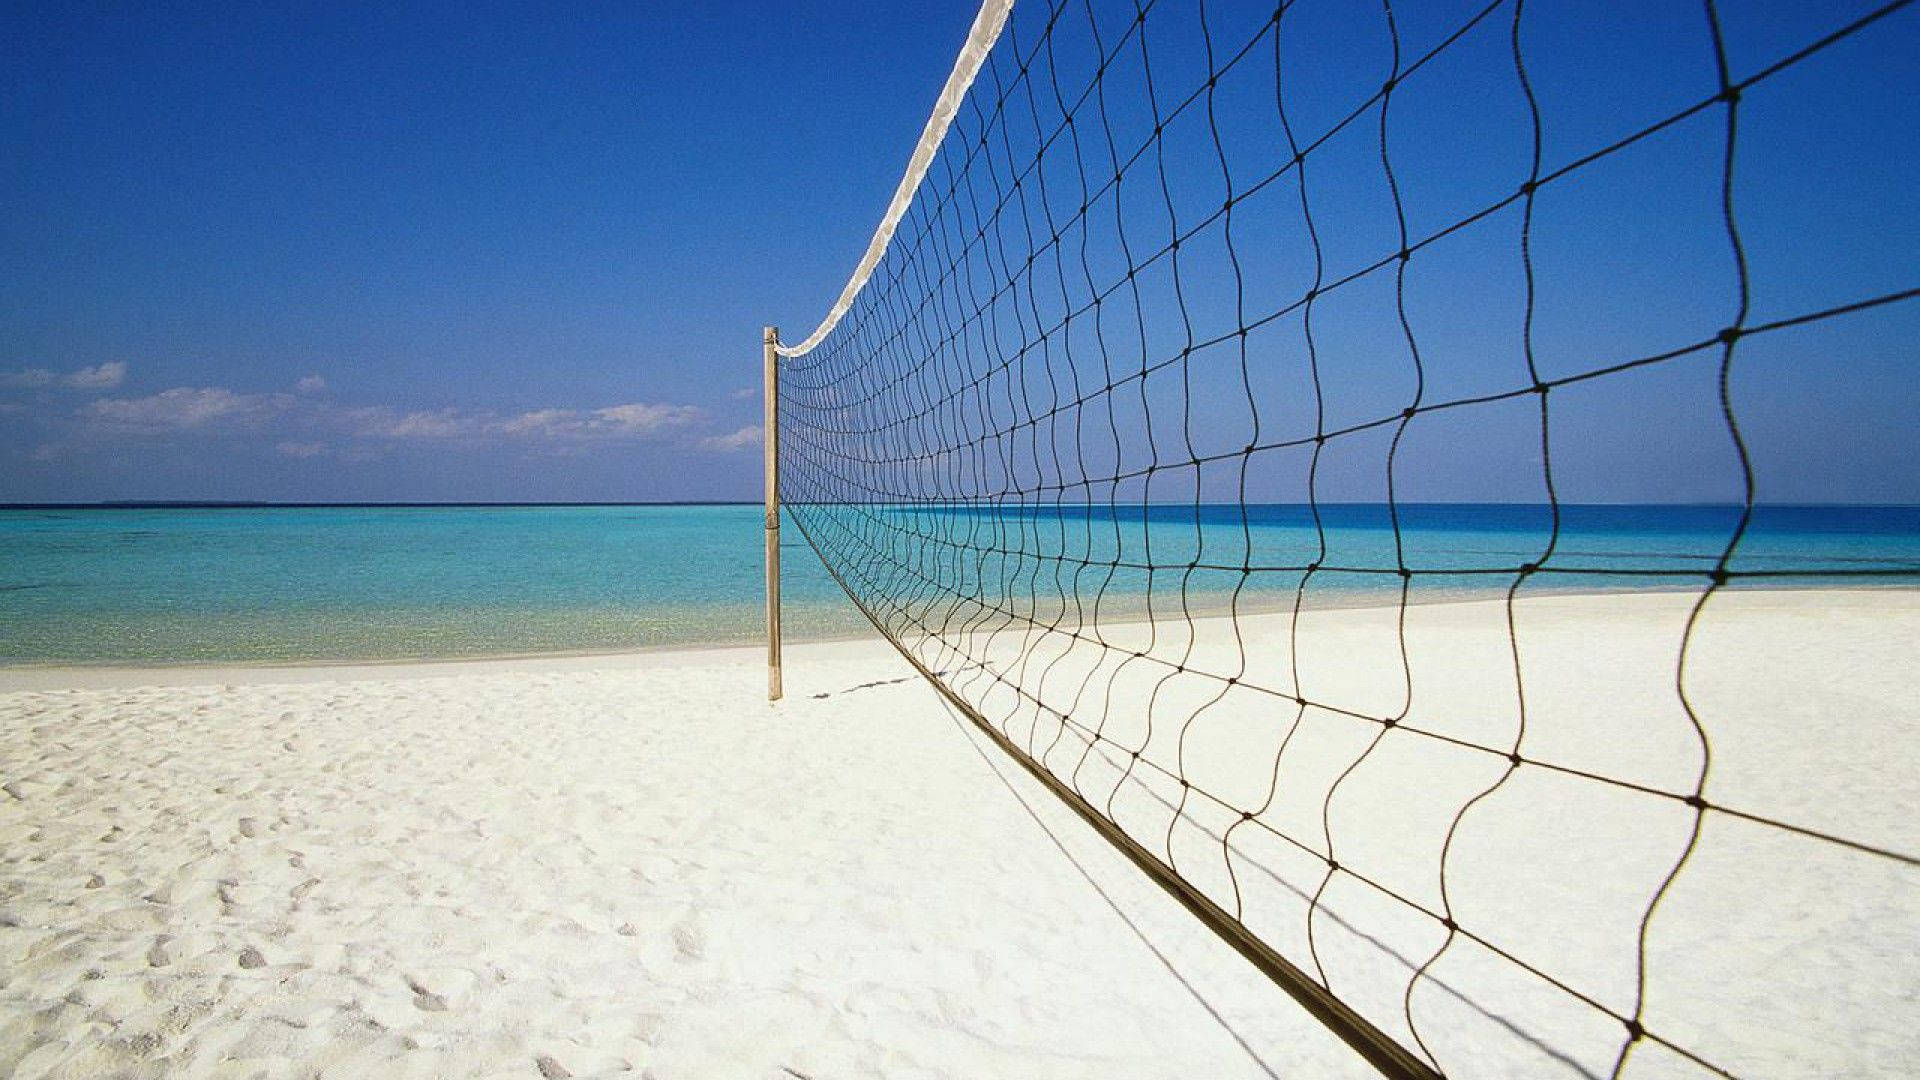 Beach Volleyball Net At Karon Beach Phuket Thailand Wallpaper